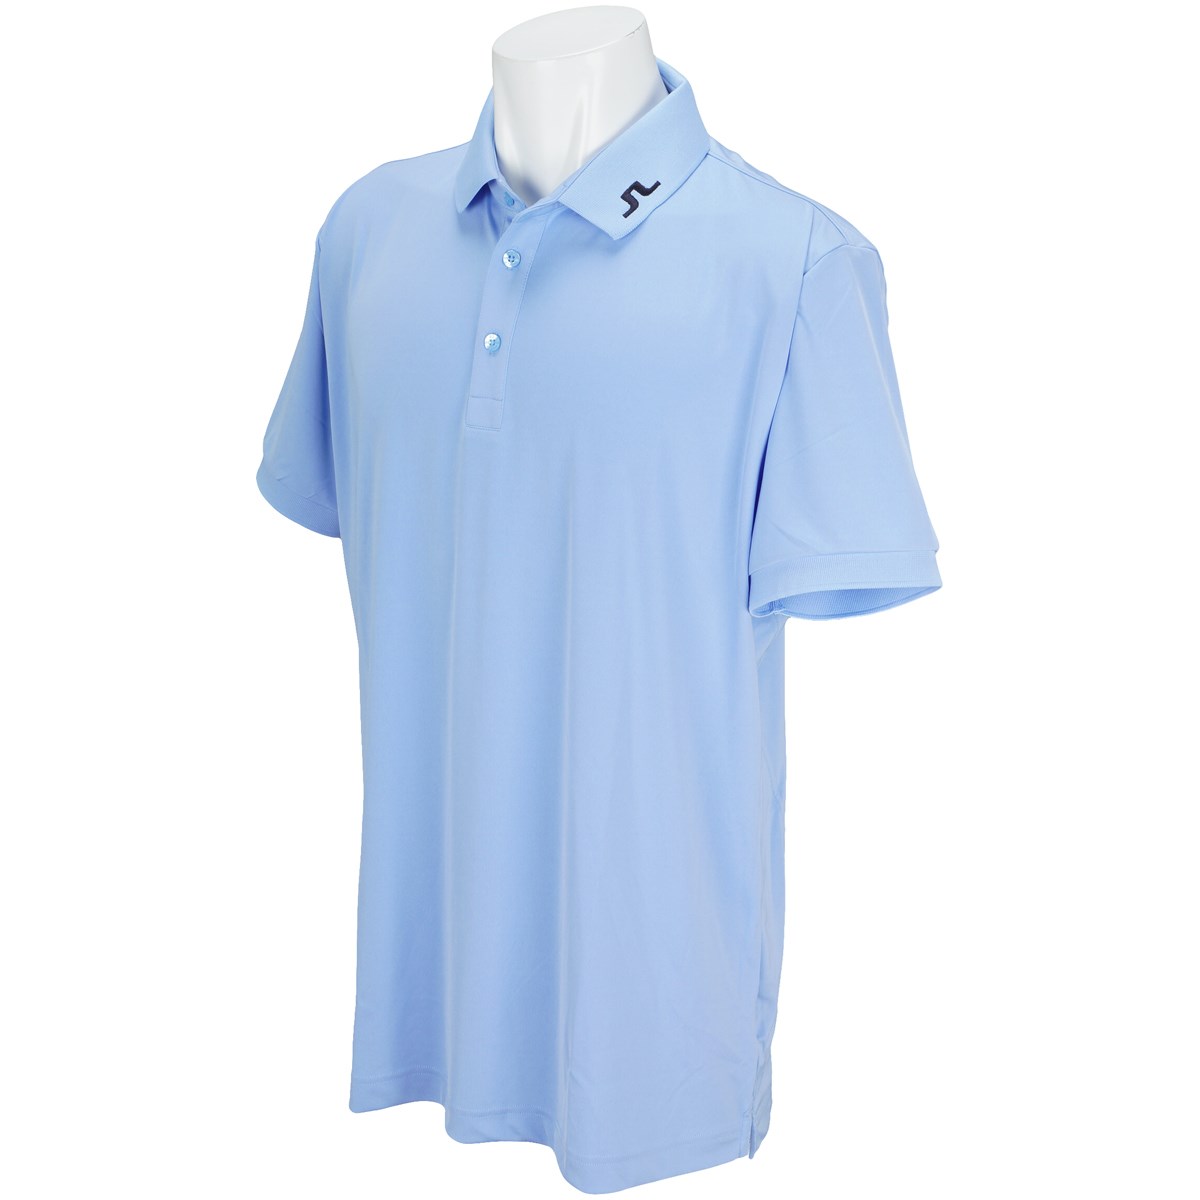 [アウトレット] [在庫限りのお買い得商品] J.リンドバーグ KV Reg TX Jersey 半袖ポロシャツ ゴルフウェアの大画像